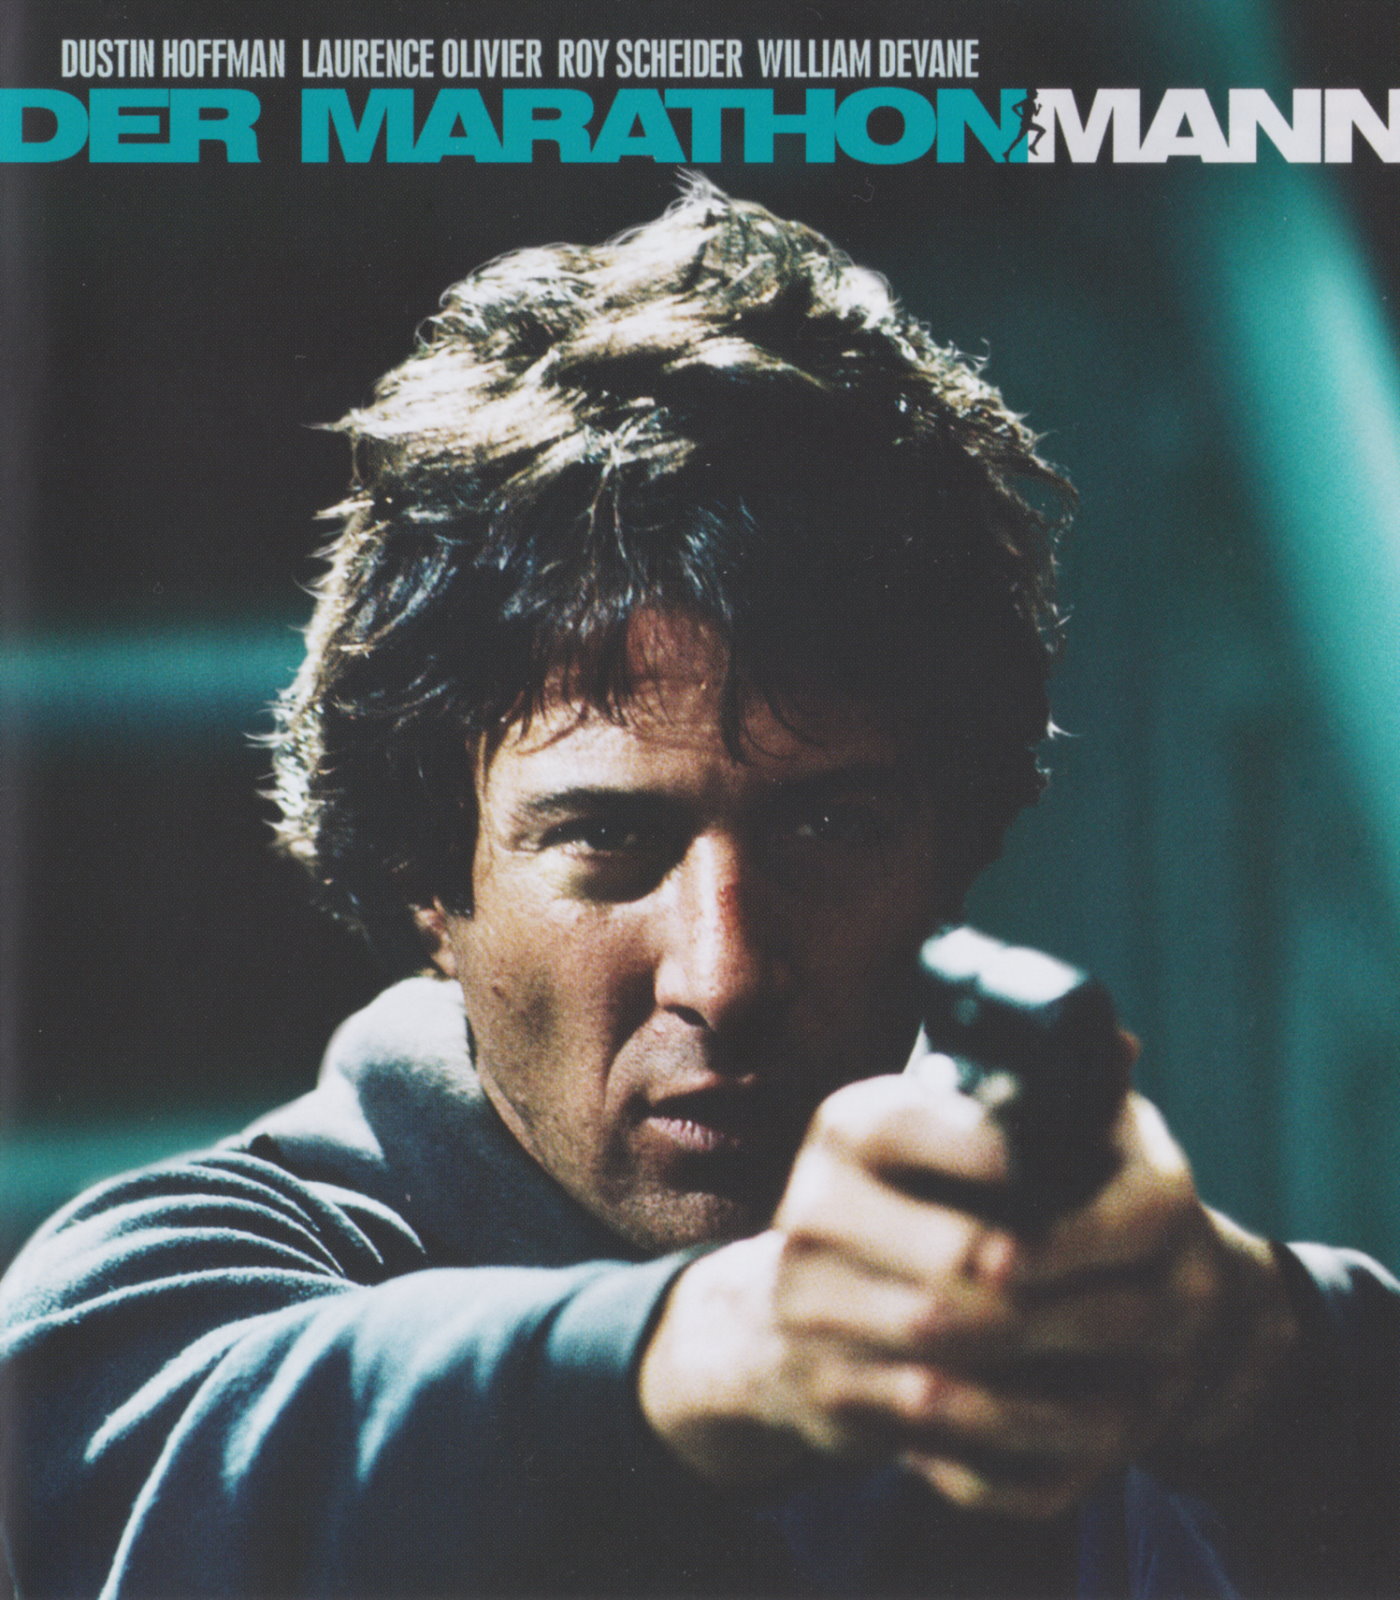 Cover - Der Marathon-Mann.jpg